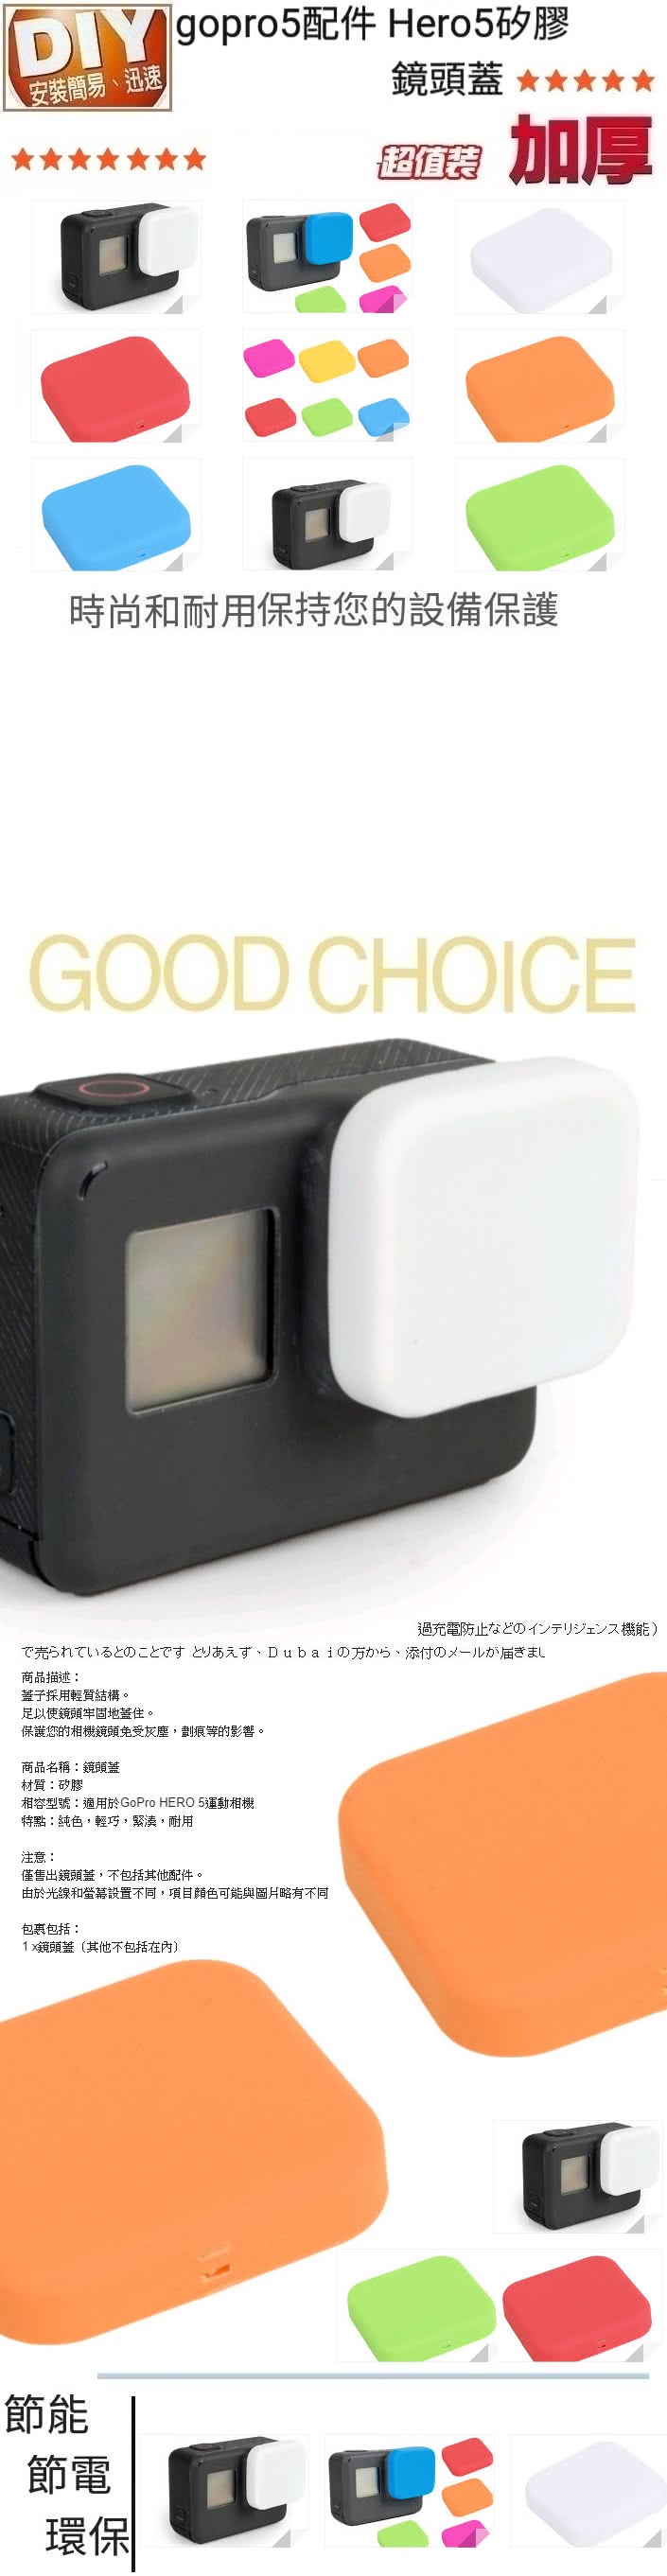 Kainmax Gopro Hero 5運動相機矽膠鏡頭蓋 適用於gopro Hero 5運動相機 Momo購物網